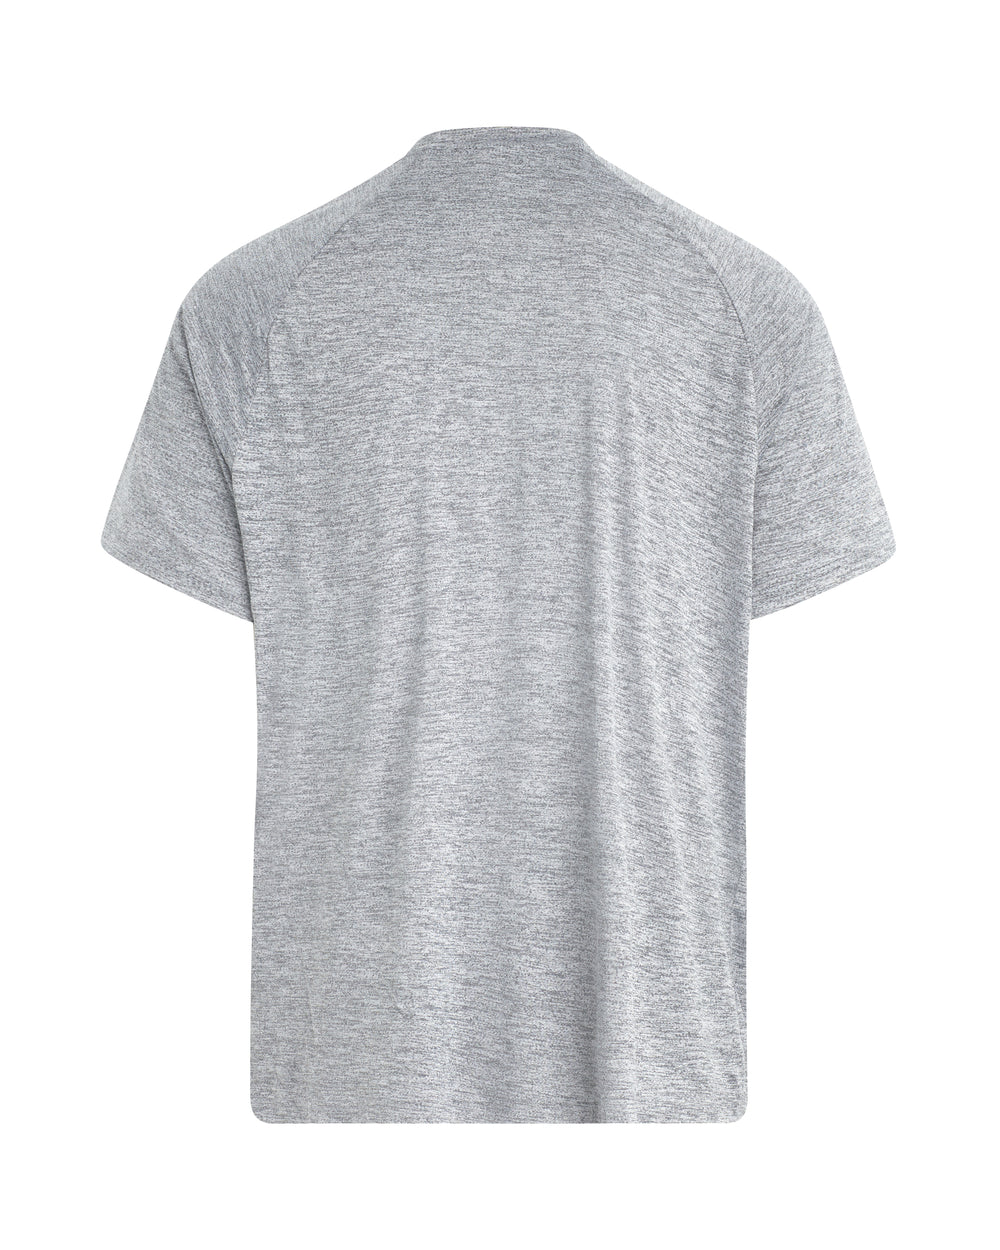 Short-Sleeved Raglan UPF 50+ T-Shirt - Ash